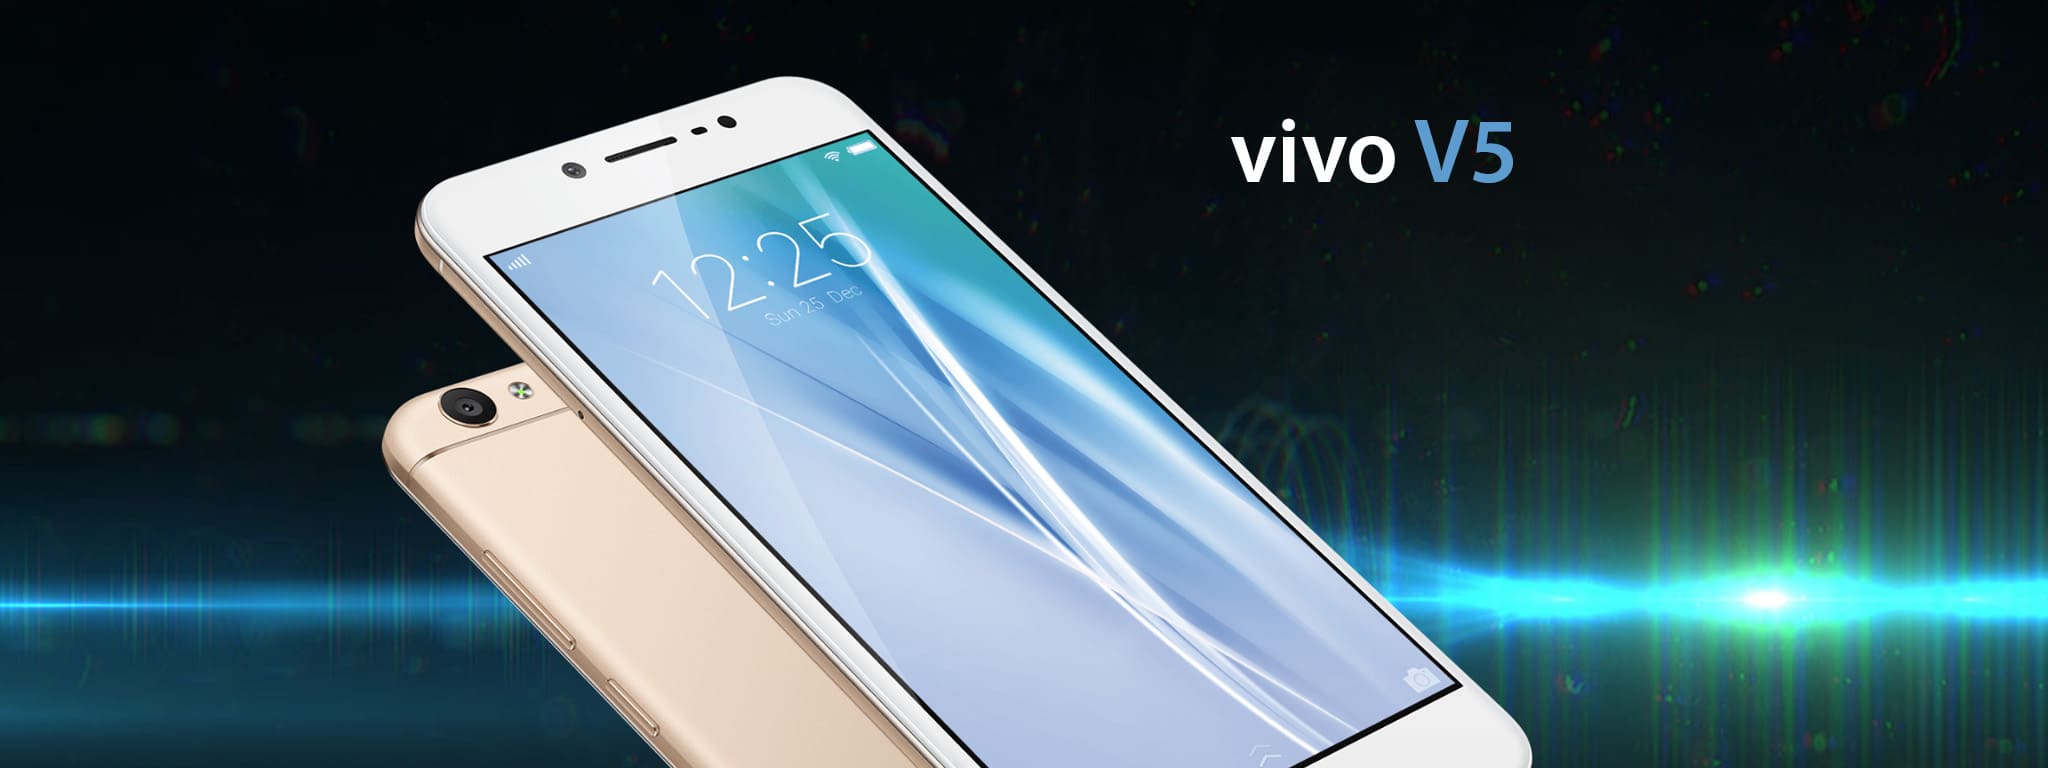 Vivo ra mắt điện thoại V5 trang bị camera trước 20MP siêu khủng dành cho tín đồ selfie